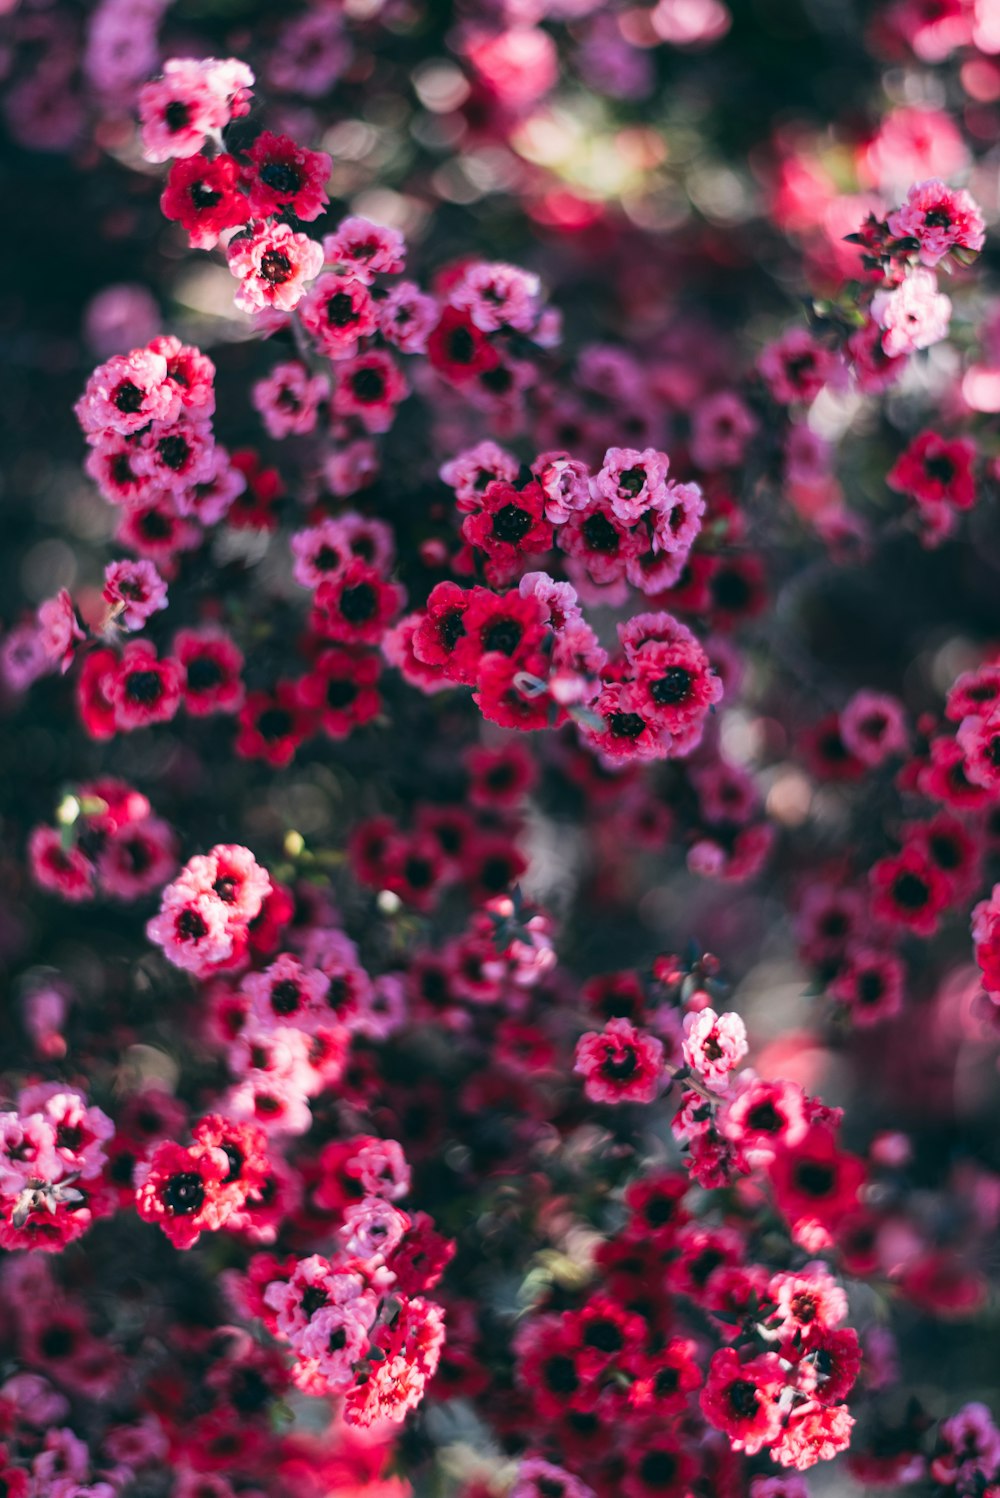 ピンクの花びらのセレクティブフォーカス写真